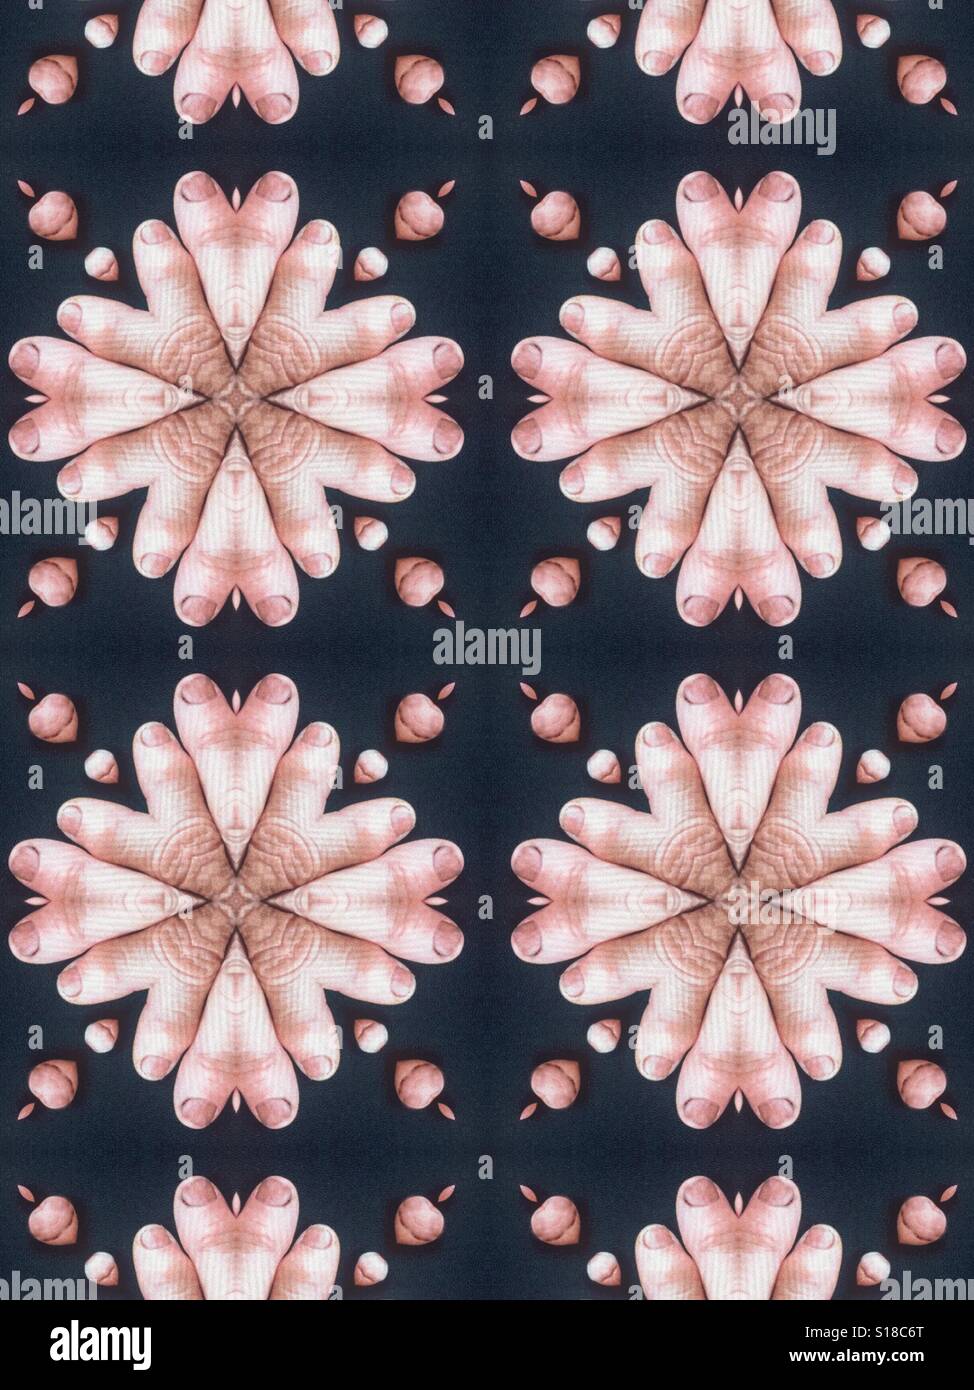 Un abstract immagine concettuale del fiore starbursts realizzato da dita umane Foto Stock